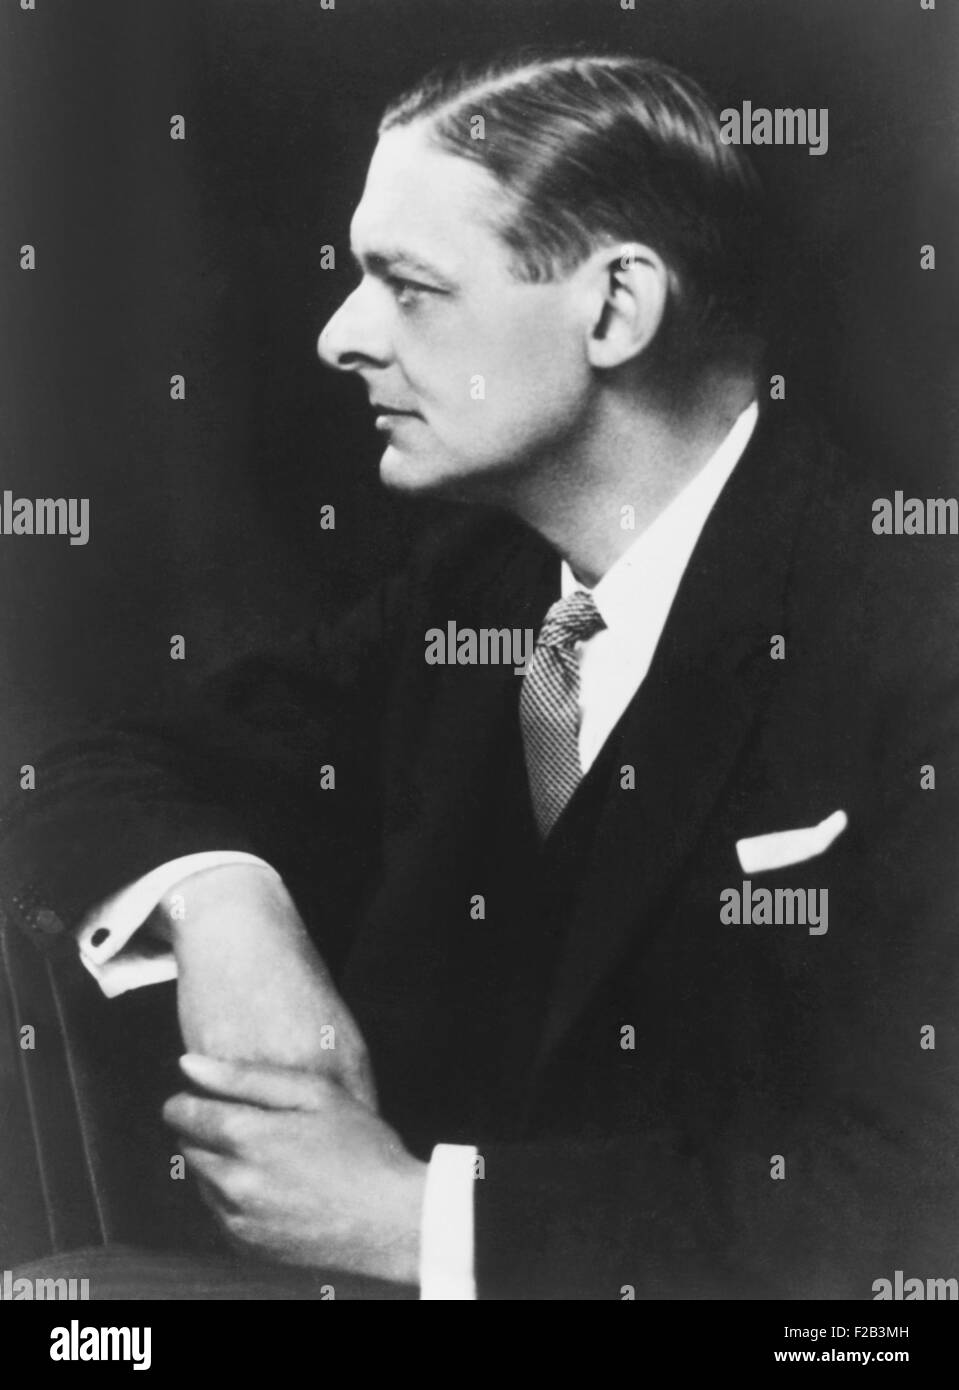 T. S. Eliot, US-amerikanischer geboren, britischer Dichter, Kritiker und Dramatiker. Foto von Elliott & Braten, ca. 1925. -(CSU 2015 5 60) Stockfoto